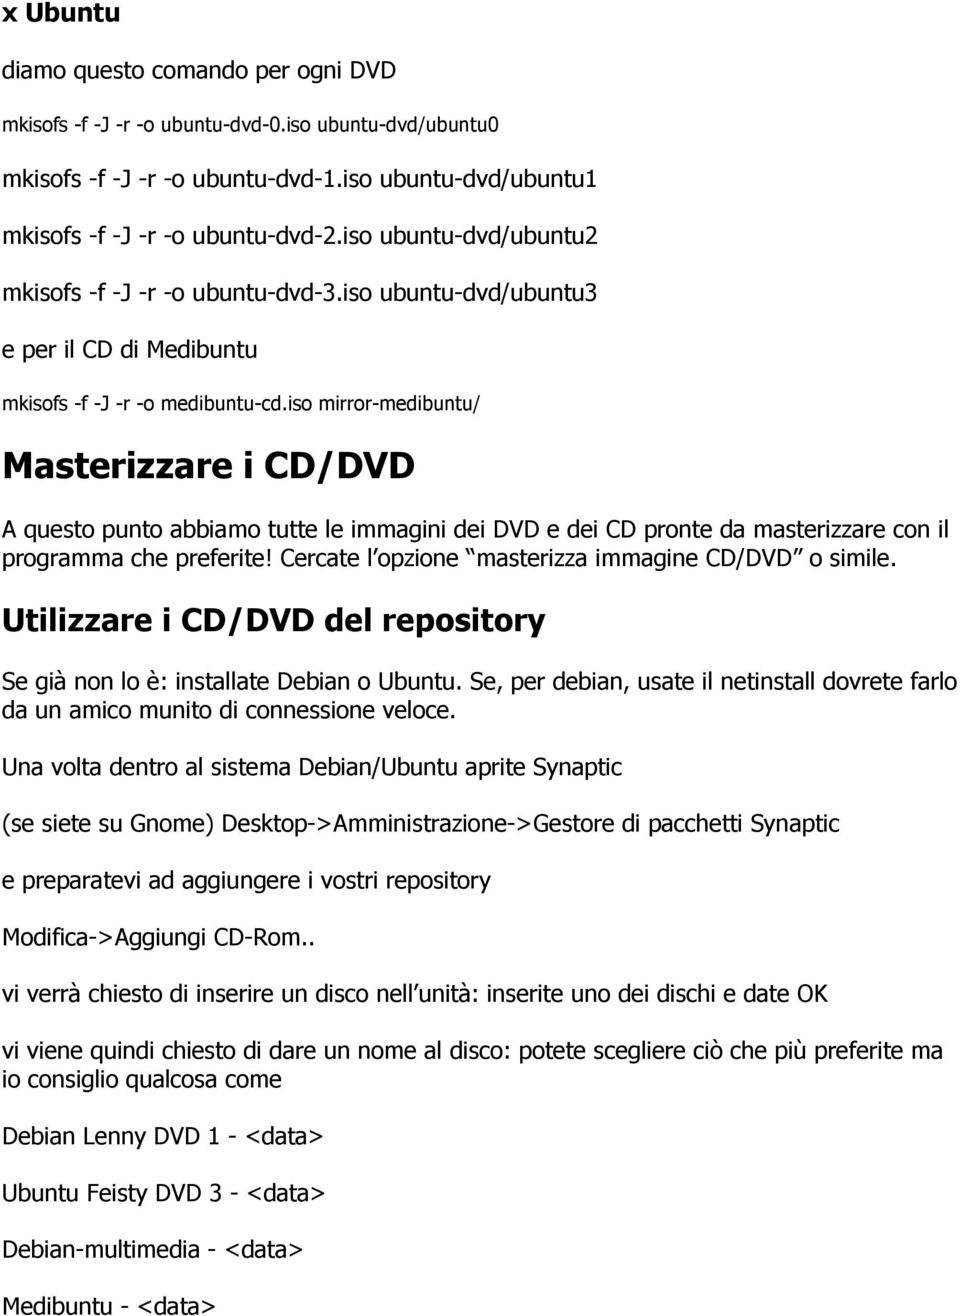 iso mirror-medibuntu/ Masterizzare i CD/DVD A questo punto abbiamo tutte le immagini dei DVD e dei CD pronte da masterizzare con il programma che preferite!